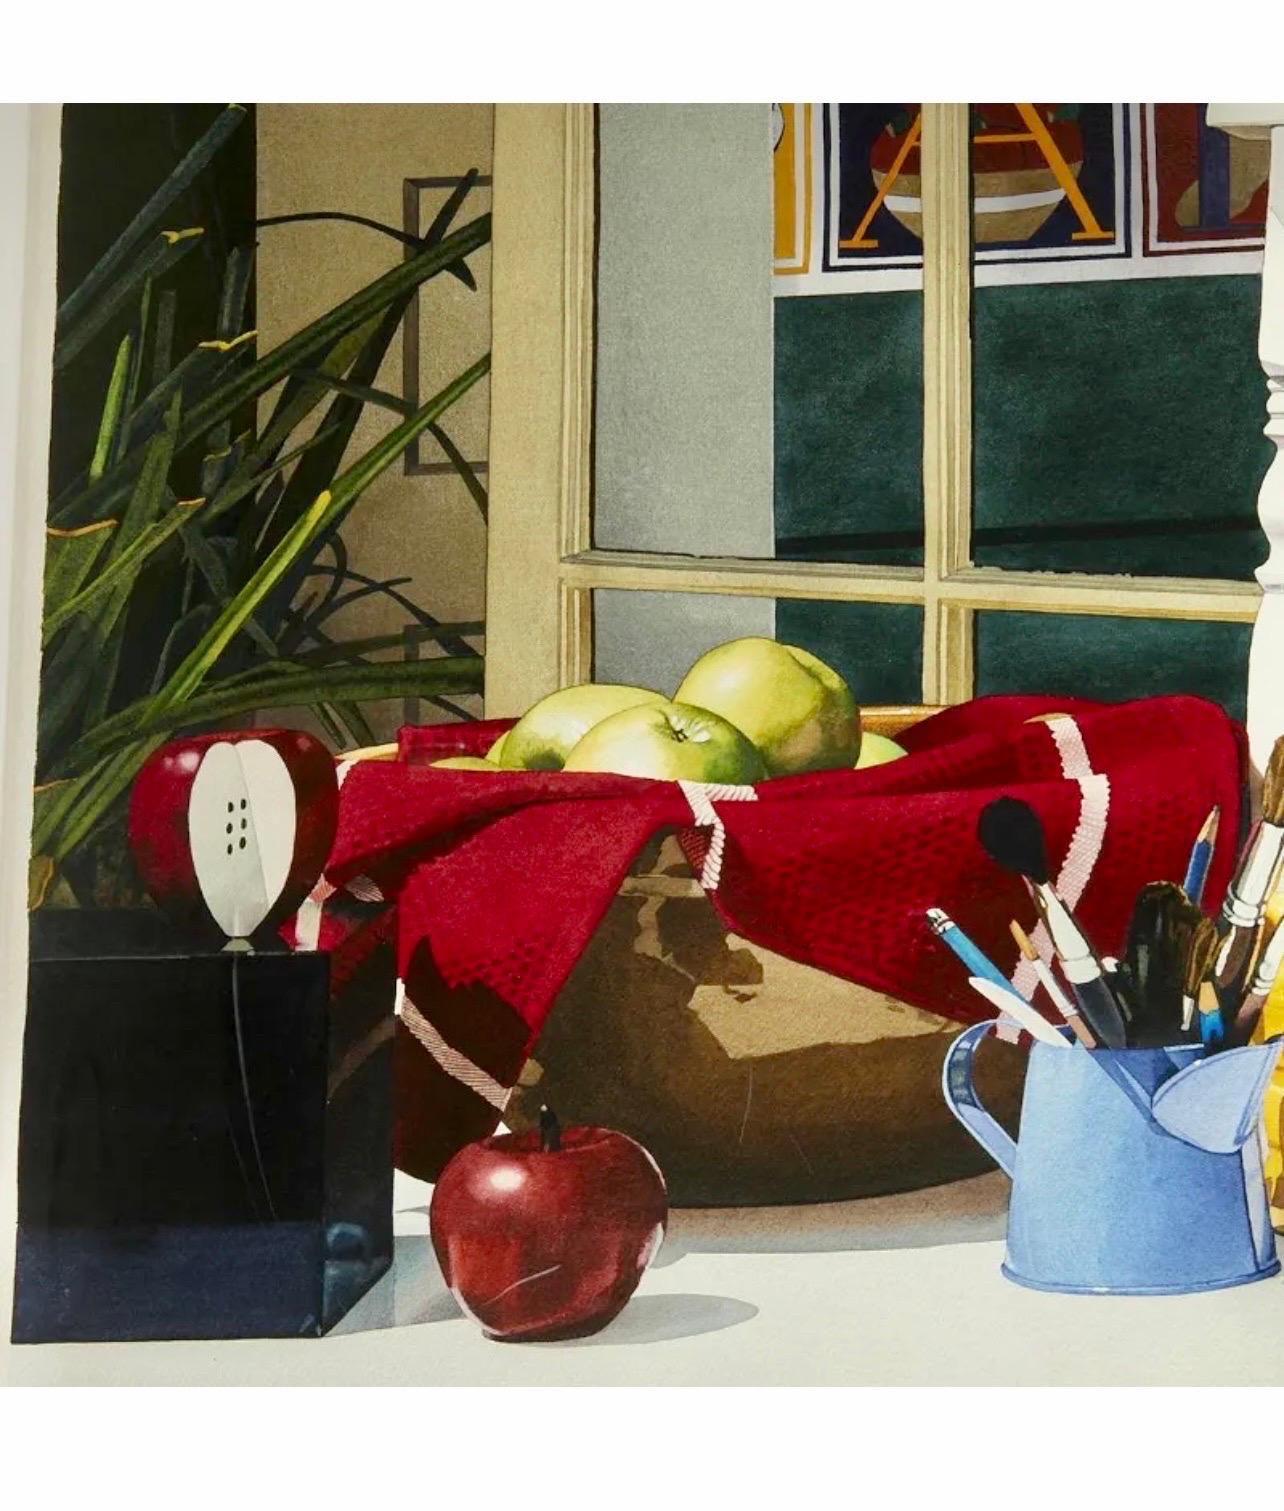 Grande peinture à l'aquarelle photo réaliste Pop Art - Jouets pour enfants - Bloc d'ours en forme d'ours en peluche - Photoréalisme Painting par Michael Beck